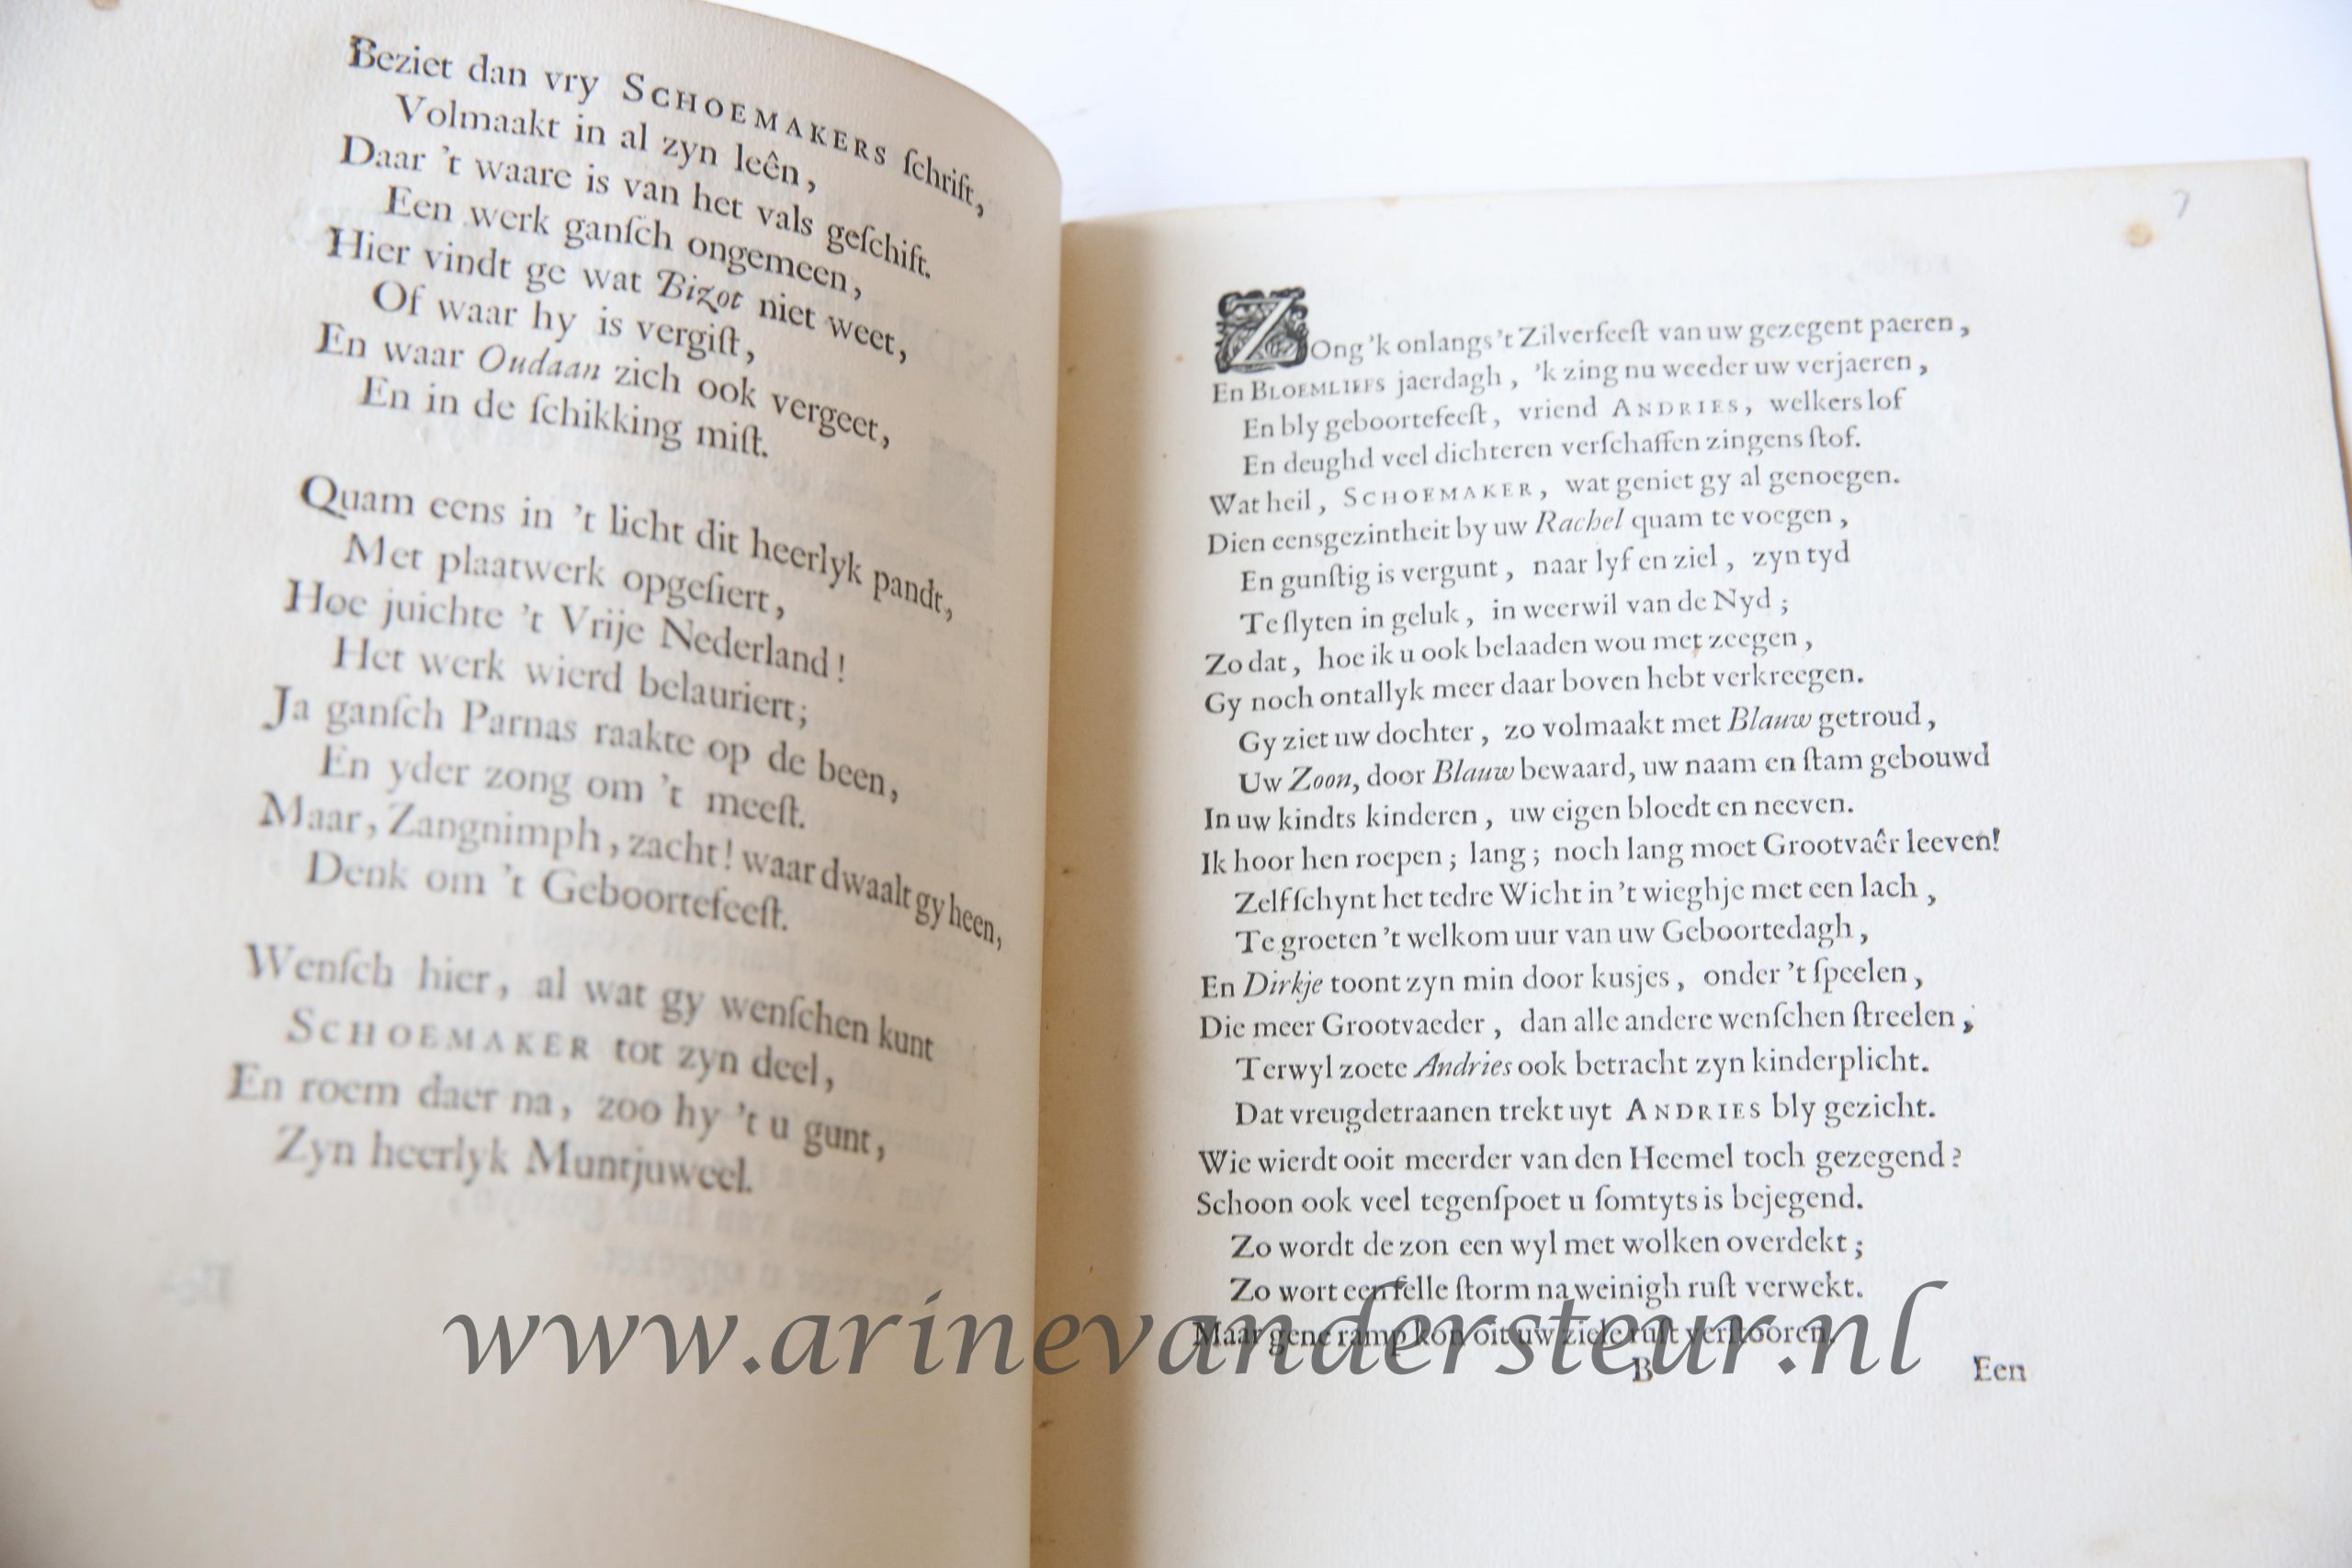  - Op het achtenveertigste verjaaren van Monsieur Andries Schoemaker, geviert in Amsterdam den 9den october 1708. z.p. 4. Incompleet, bevat alleen pp. [5]-[10] van 15 p., met een gedicht door J. van Oosterwijk.